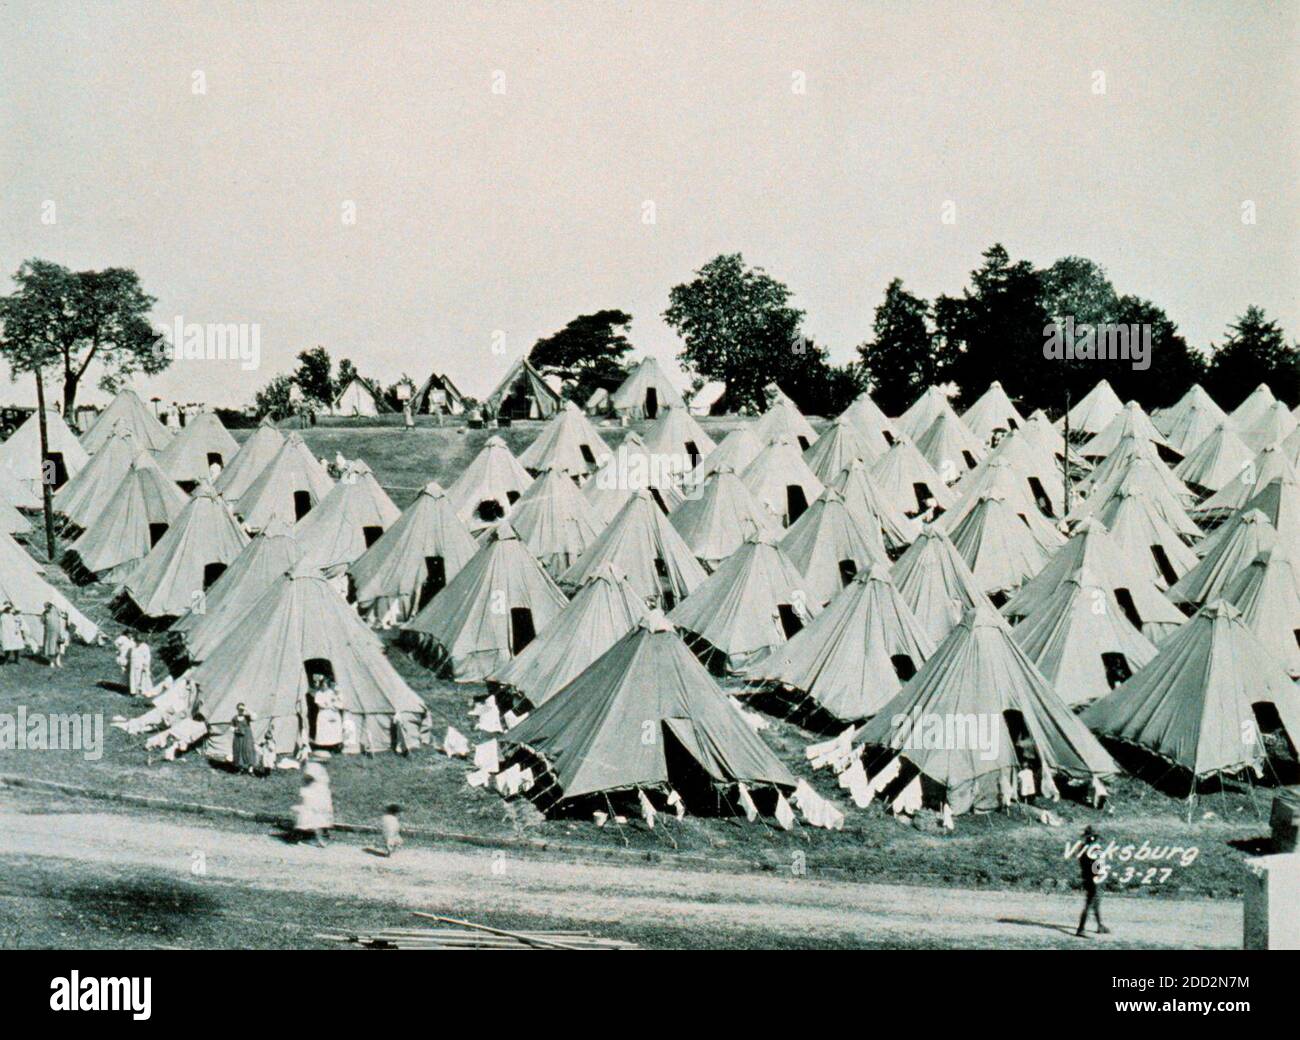 Le grand déluge du Mississippi de 1927. Un camp de réfugiés à Vicksburg, Mississippi. C'était un beau camp en hauteur. De nombreux réfugiés ont dû vivre sur les lévés pendant des mois jusqu'à ce que l'eau soit repartie. Mai 1927 Banque D'Images